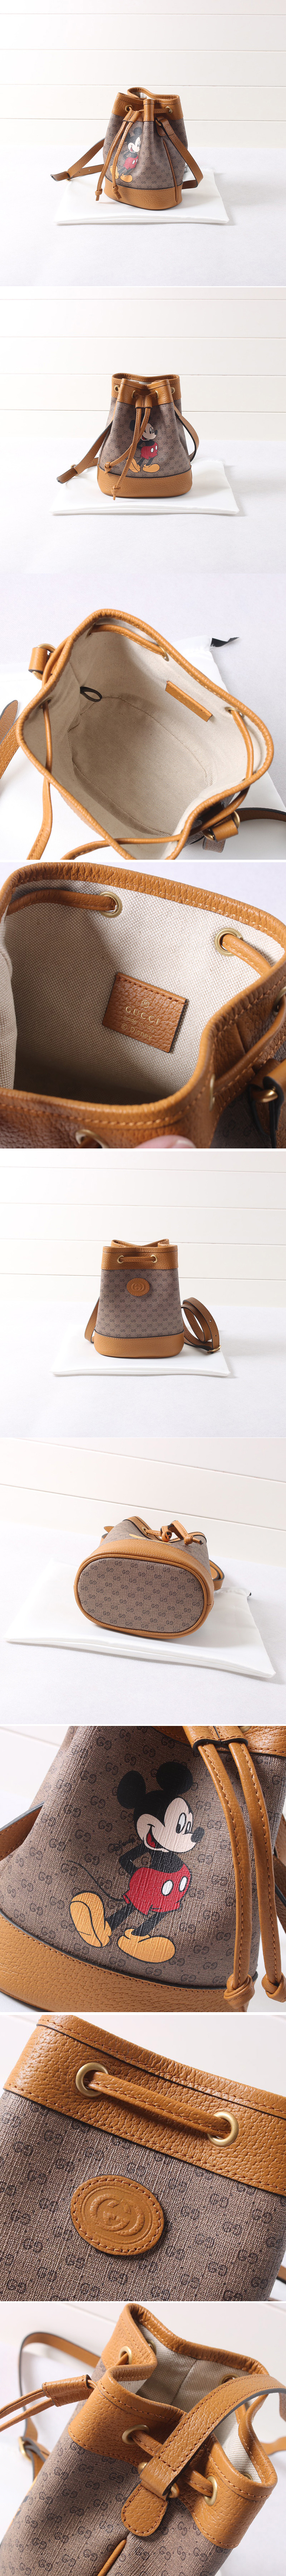 Replica Gucci 550620 Disney x Gucci Ophidia mini GG bucket bag in Beige/ebony mini GG Supreme canvas with Mickey Mouse